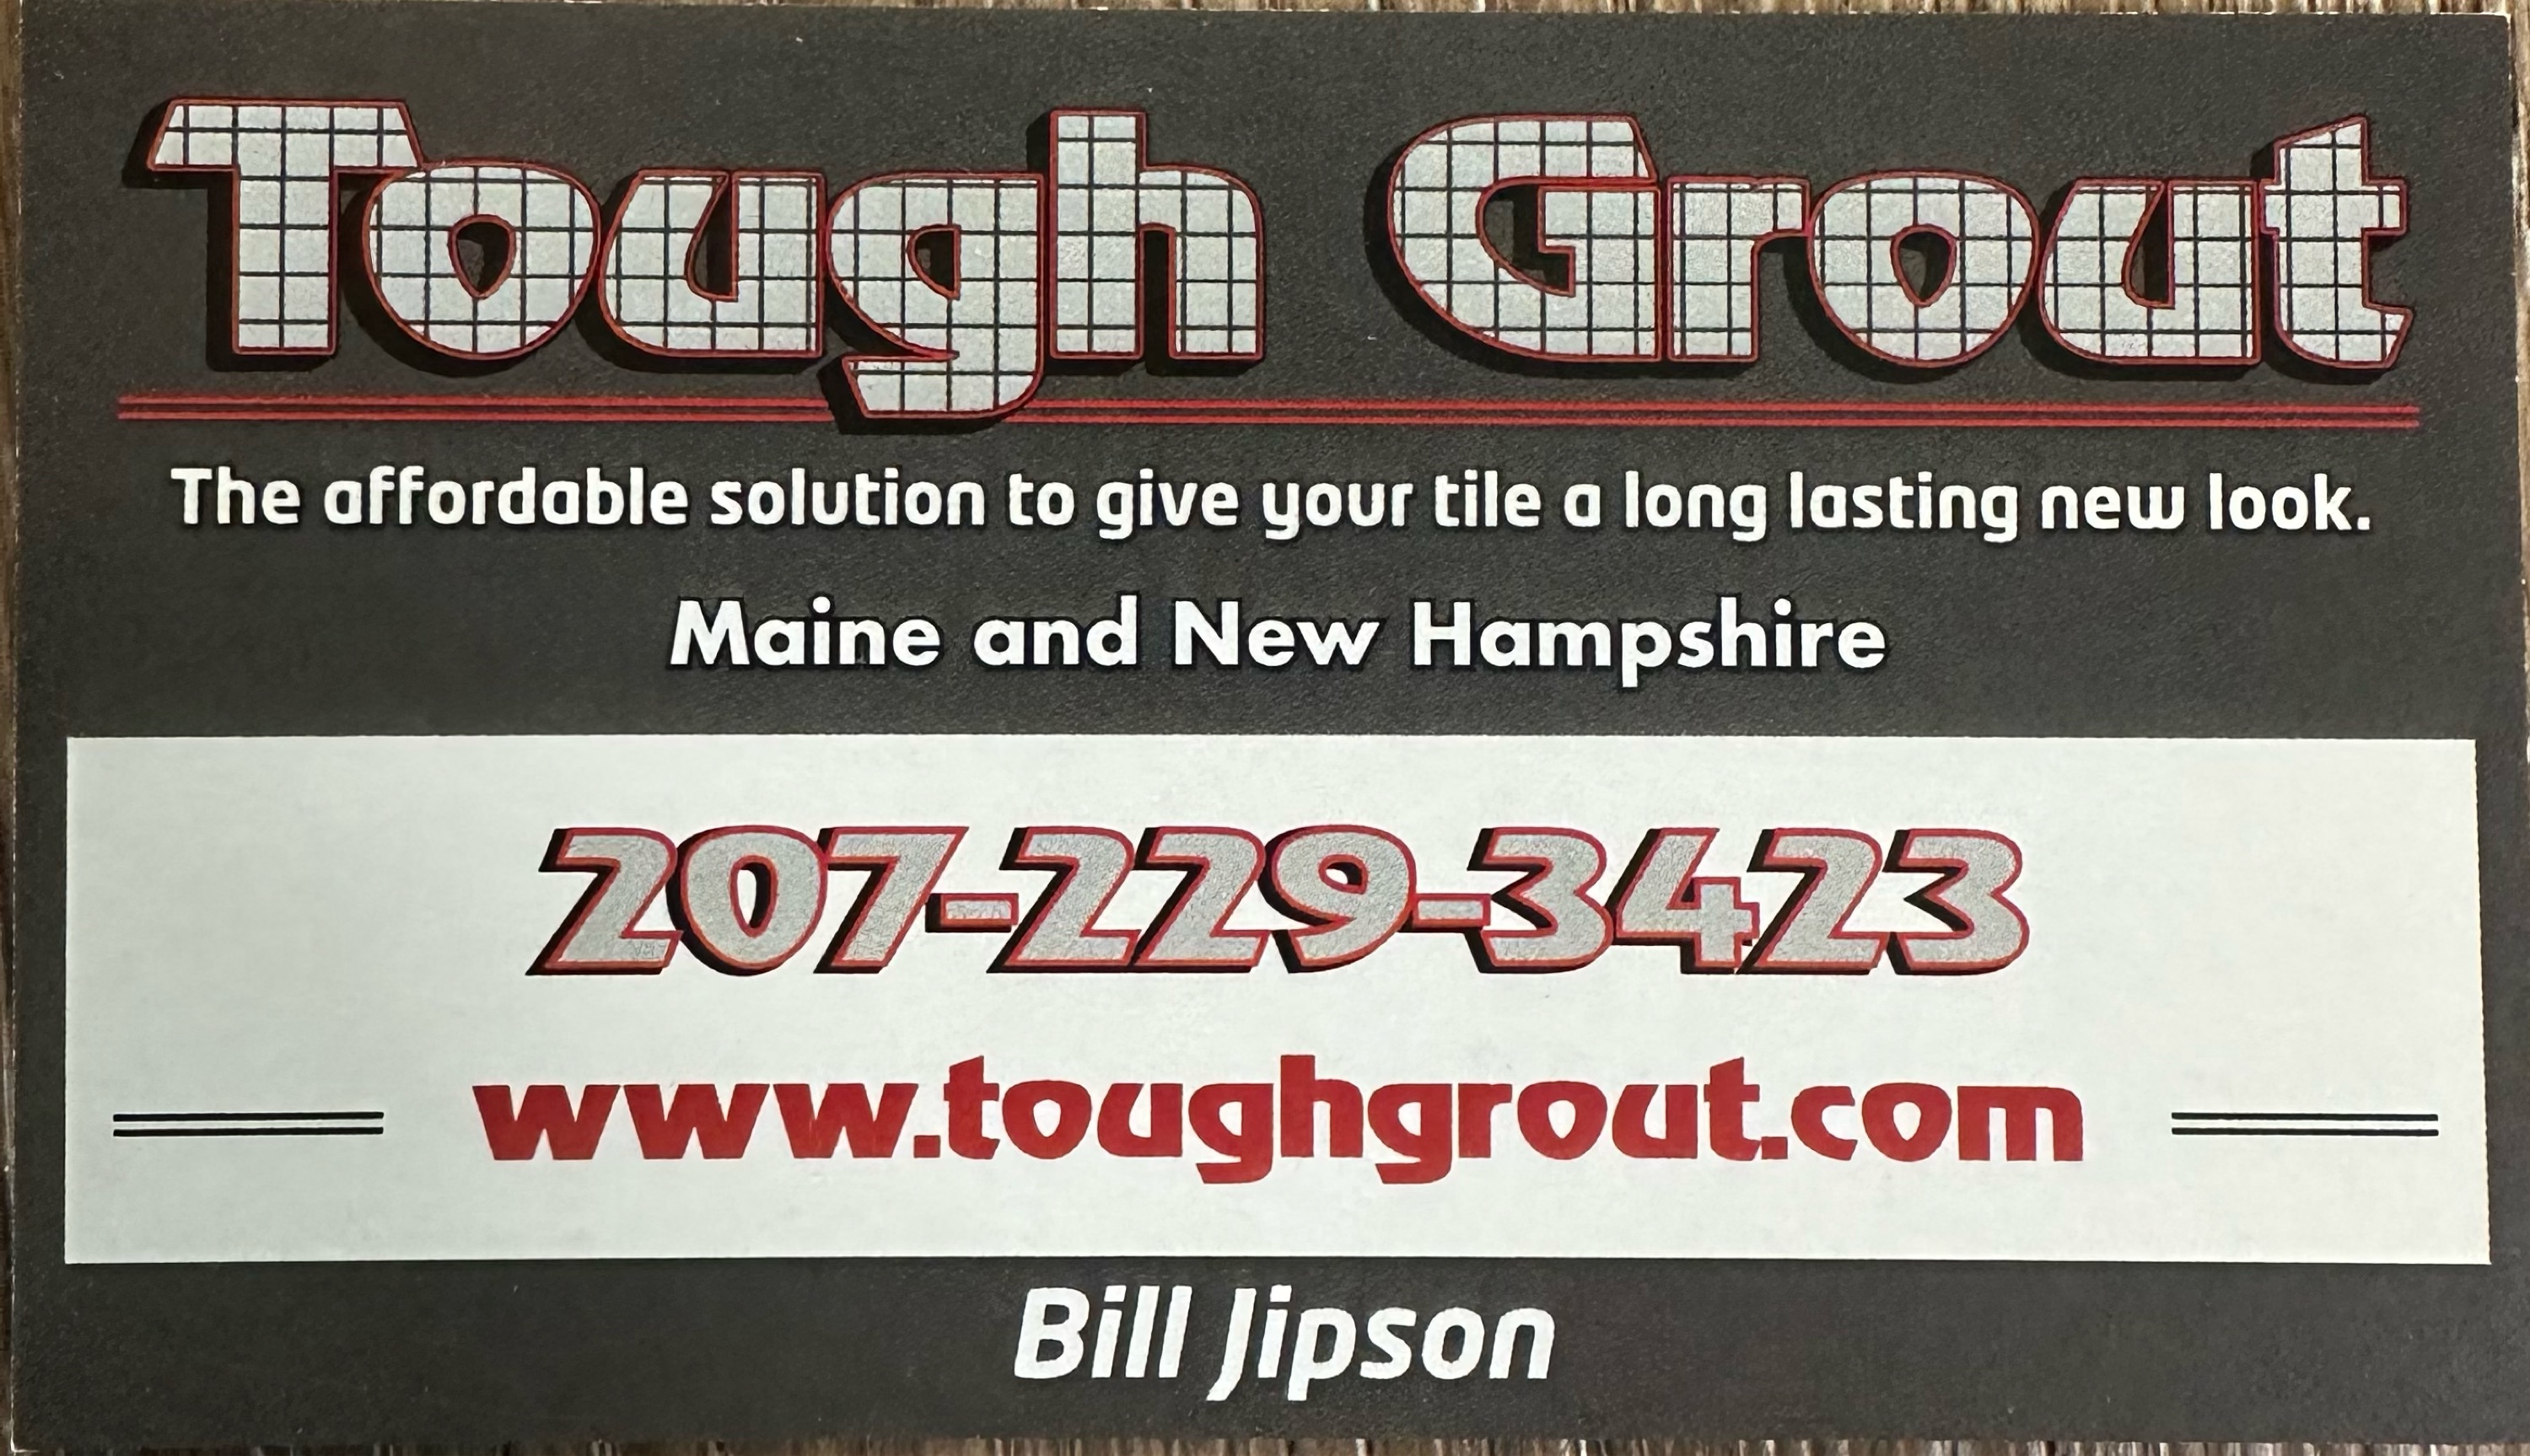 Tough Grout, LLC Logo